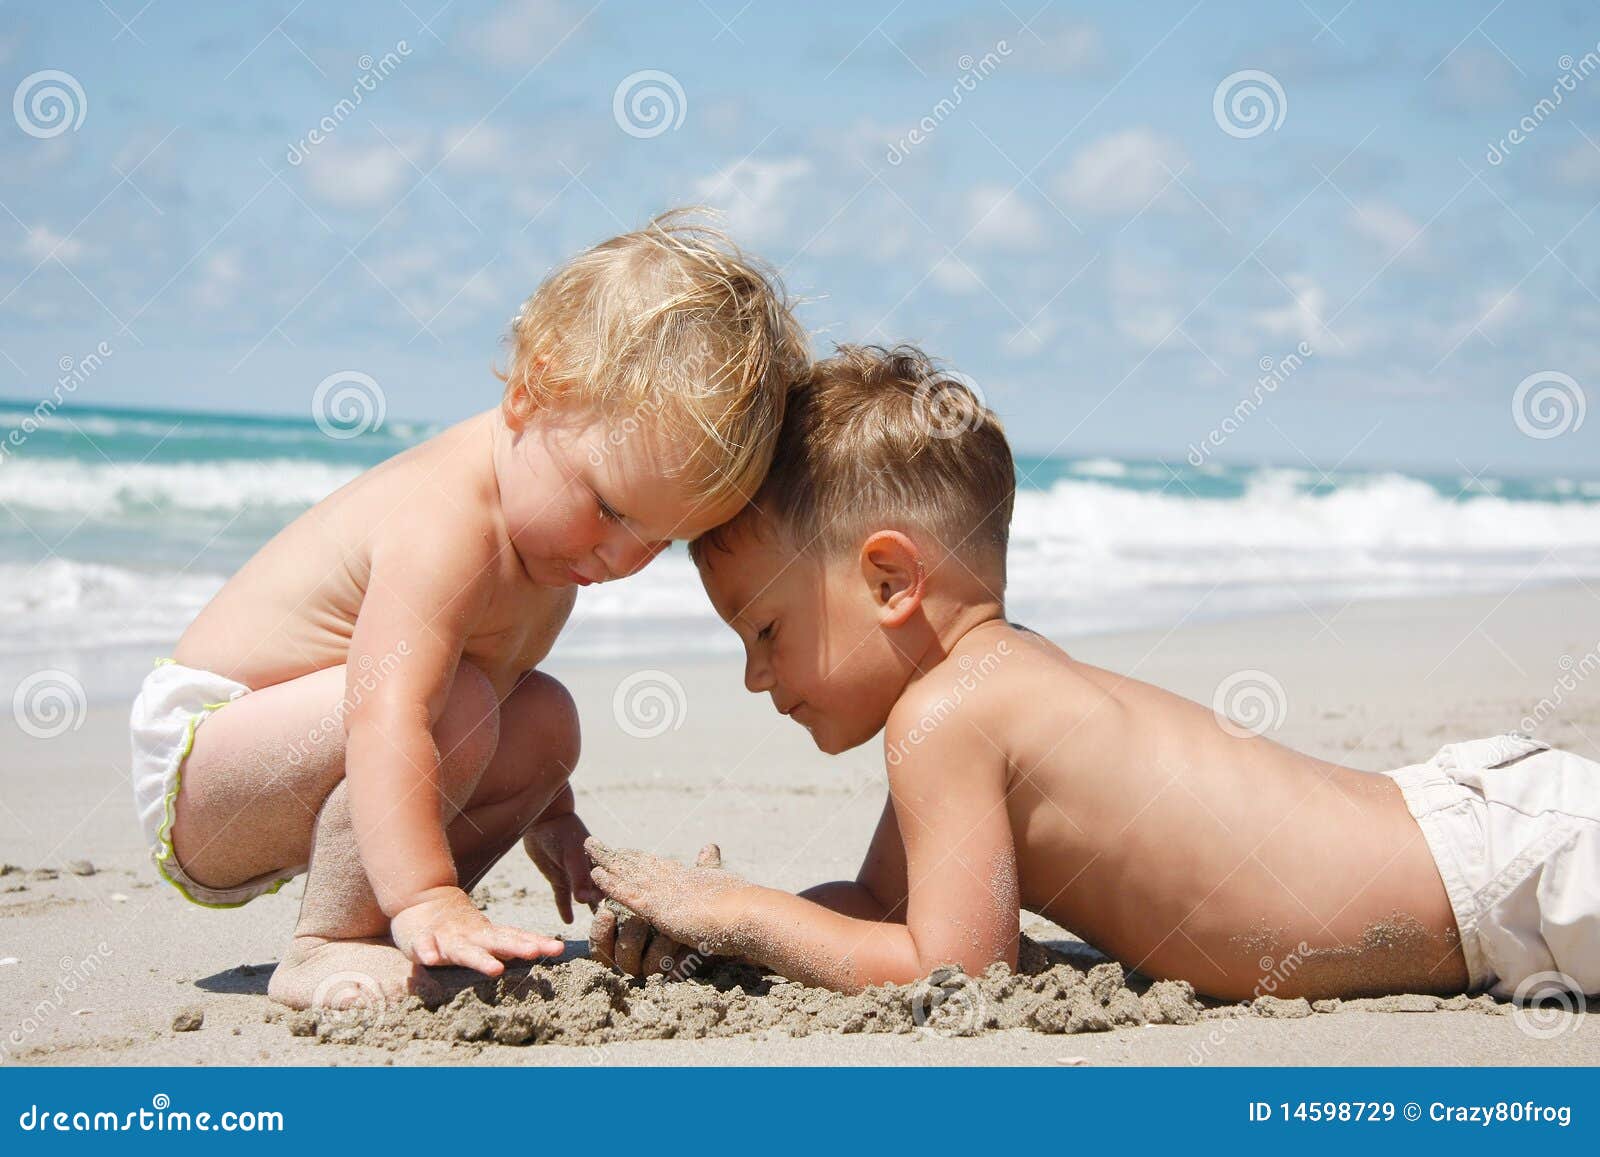 за голыми детьми на пляже фото 94